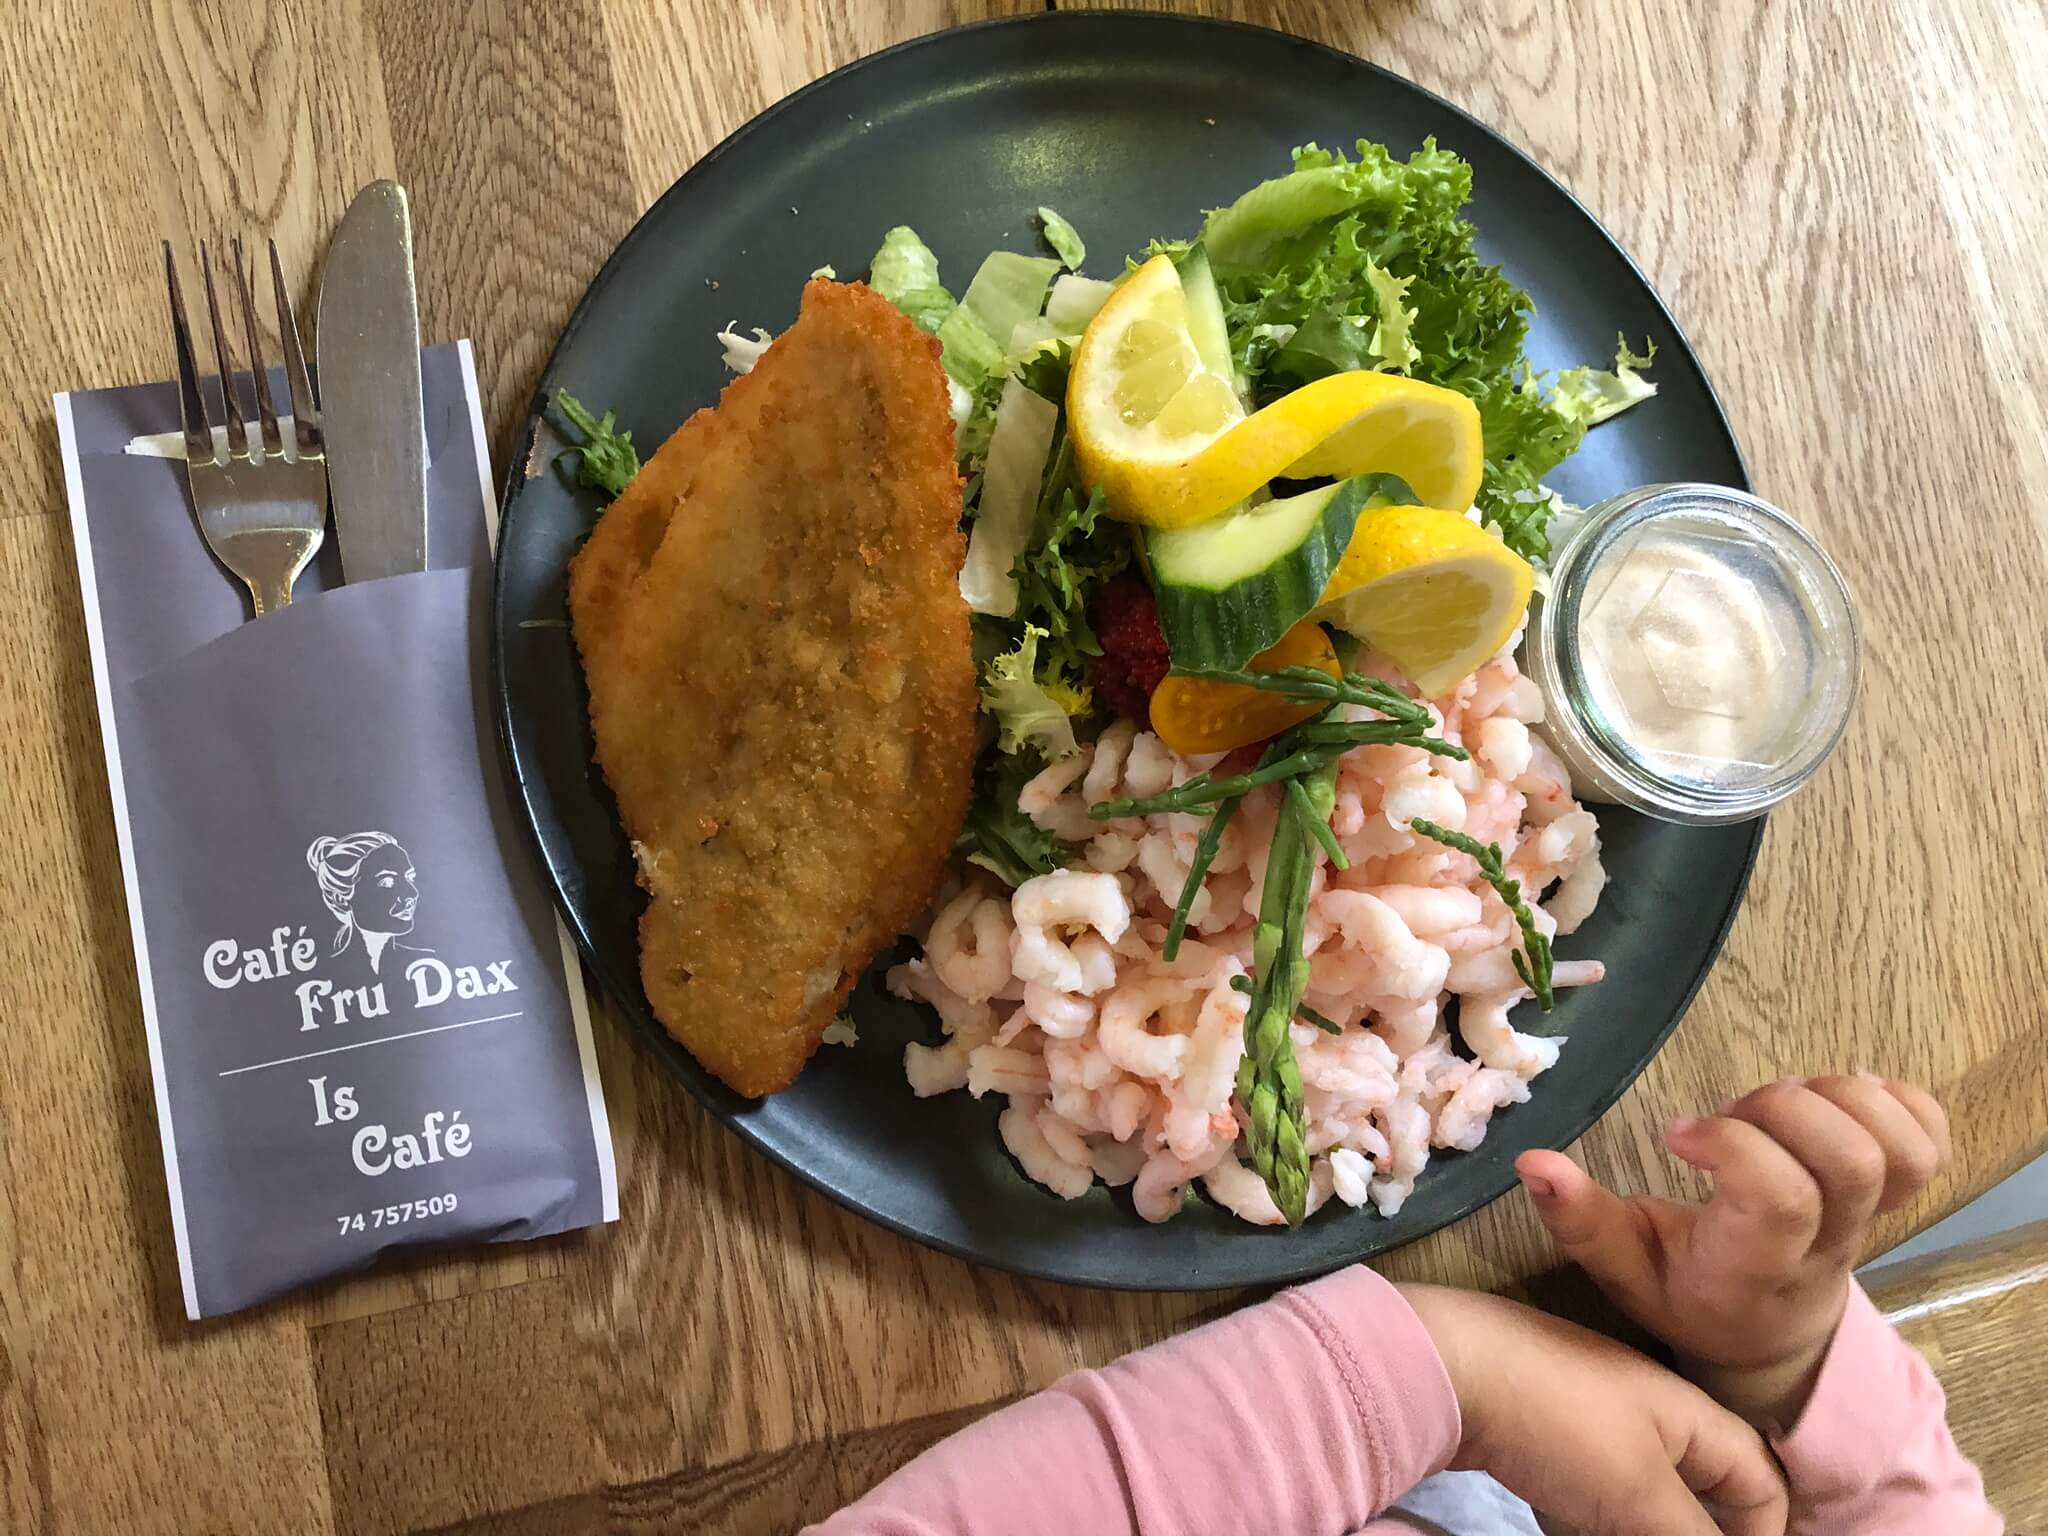 Cafe Fru Dax - Danmarks bedste ishus og dejligt familievenligt spisested på Rømø